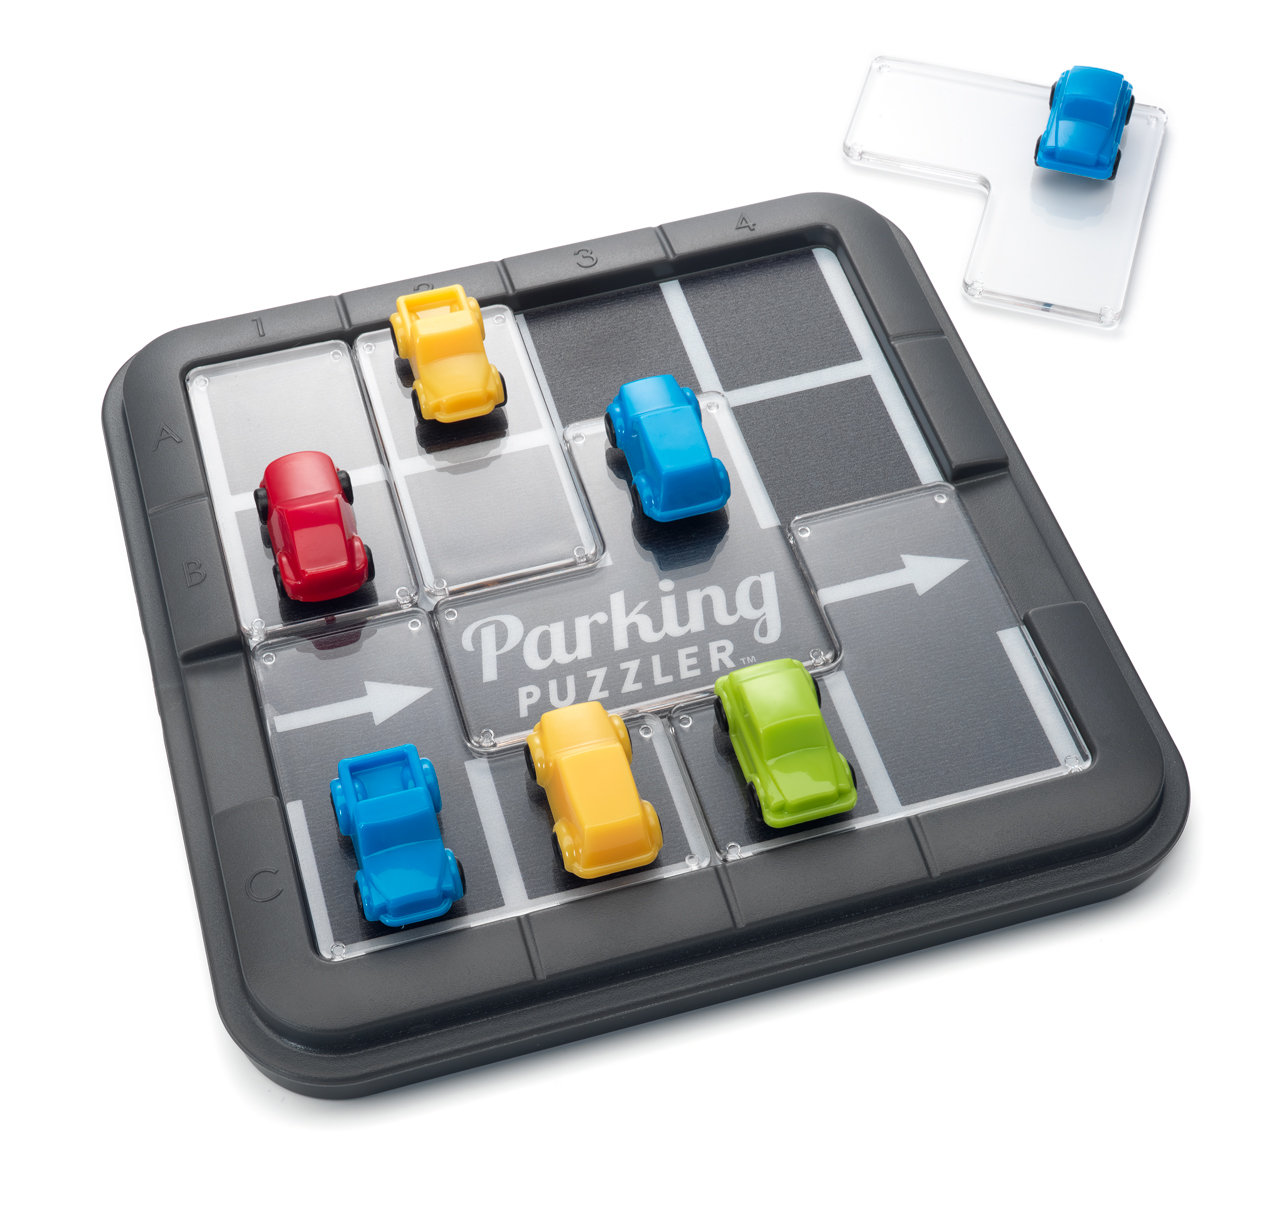 SMART Parking GAMES Puzzler Puzzle